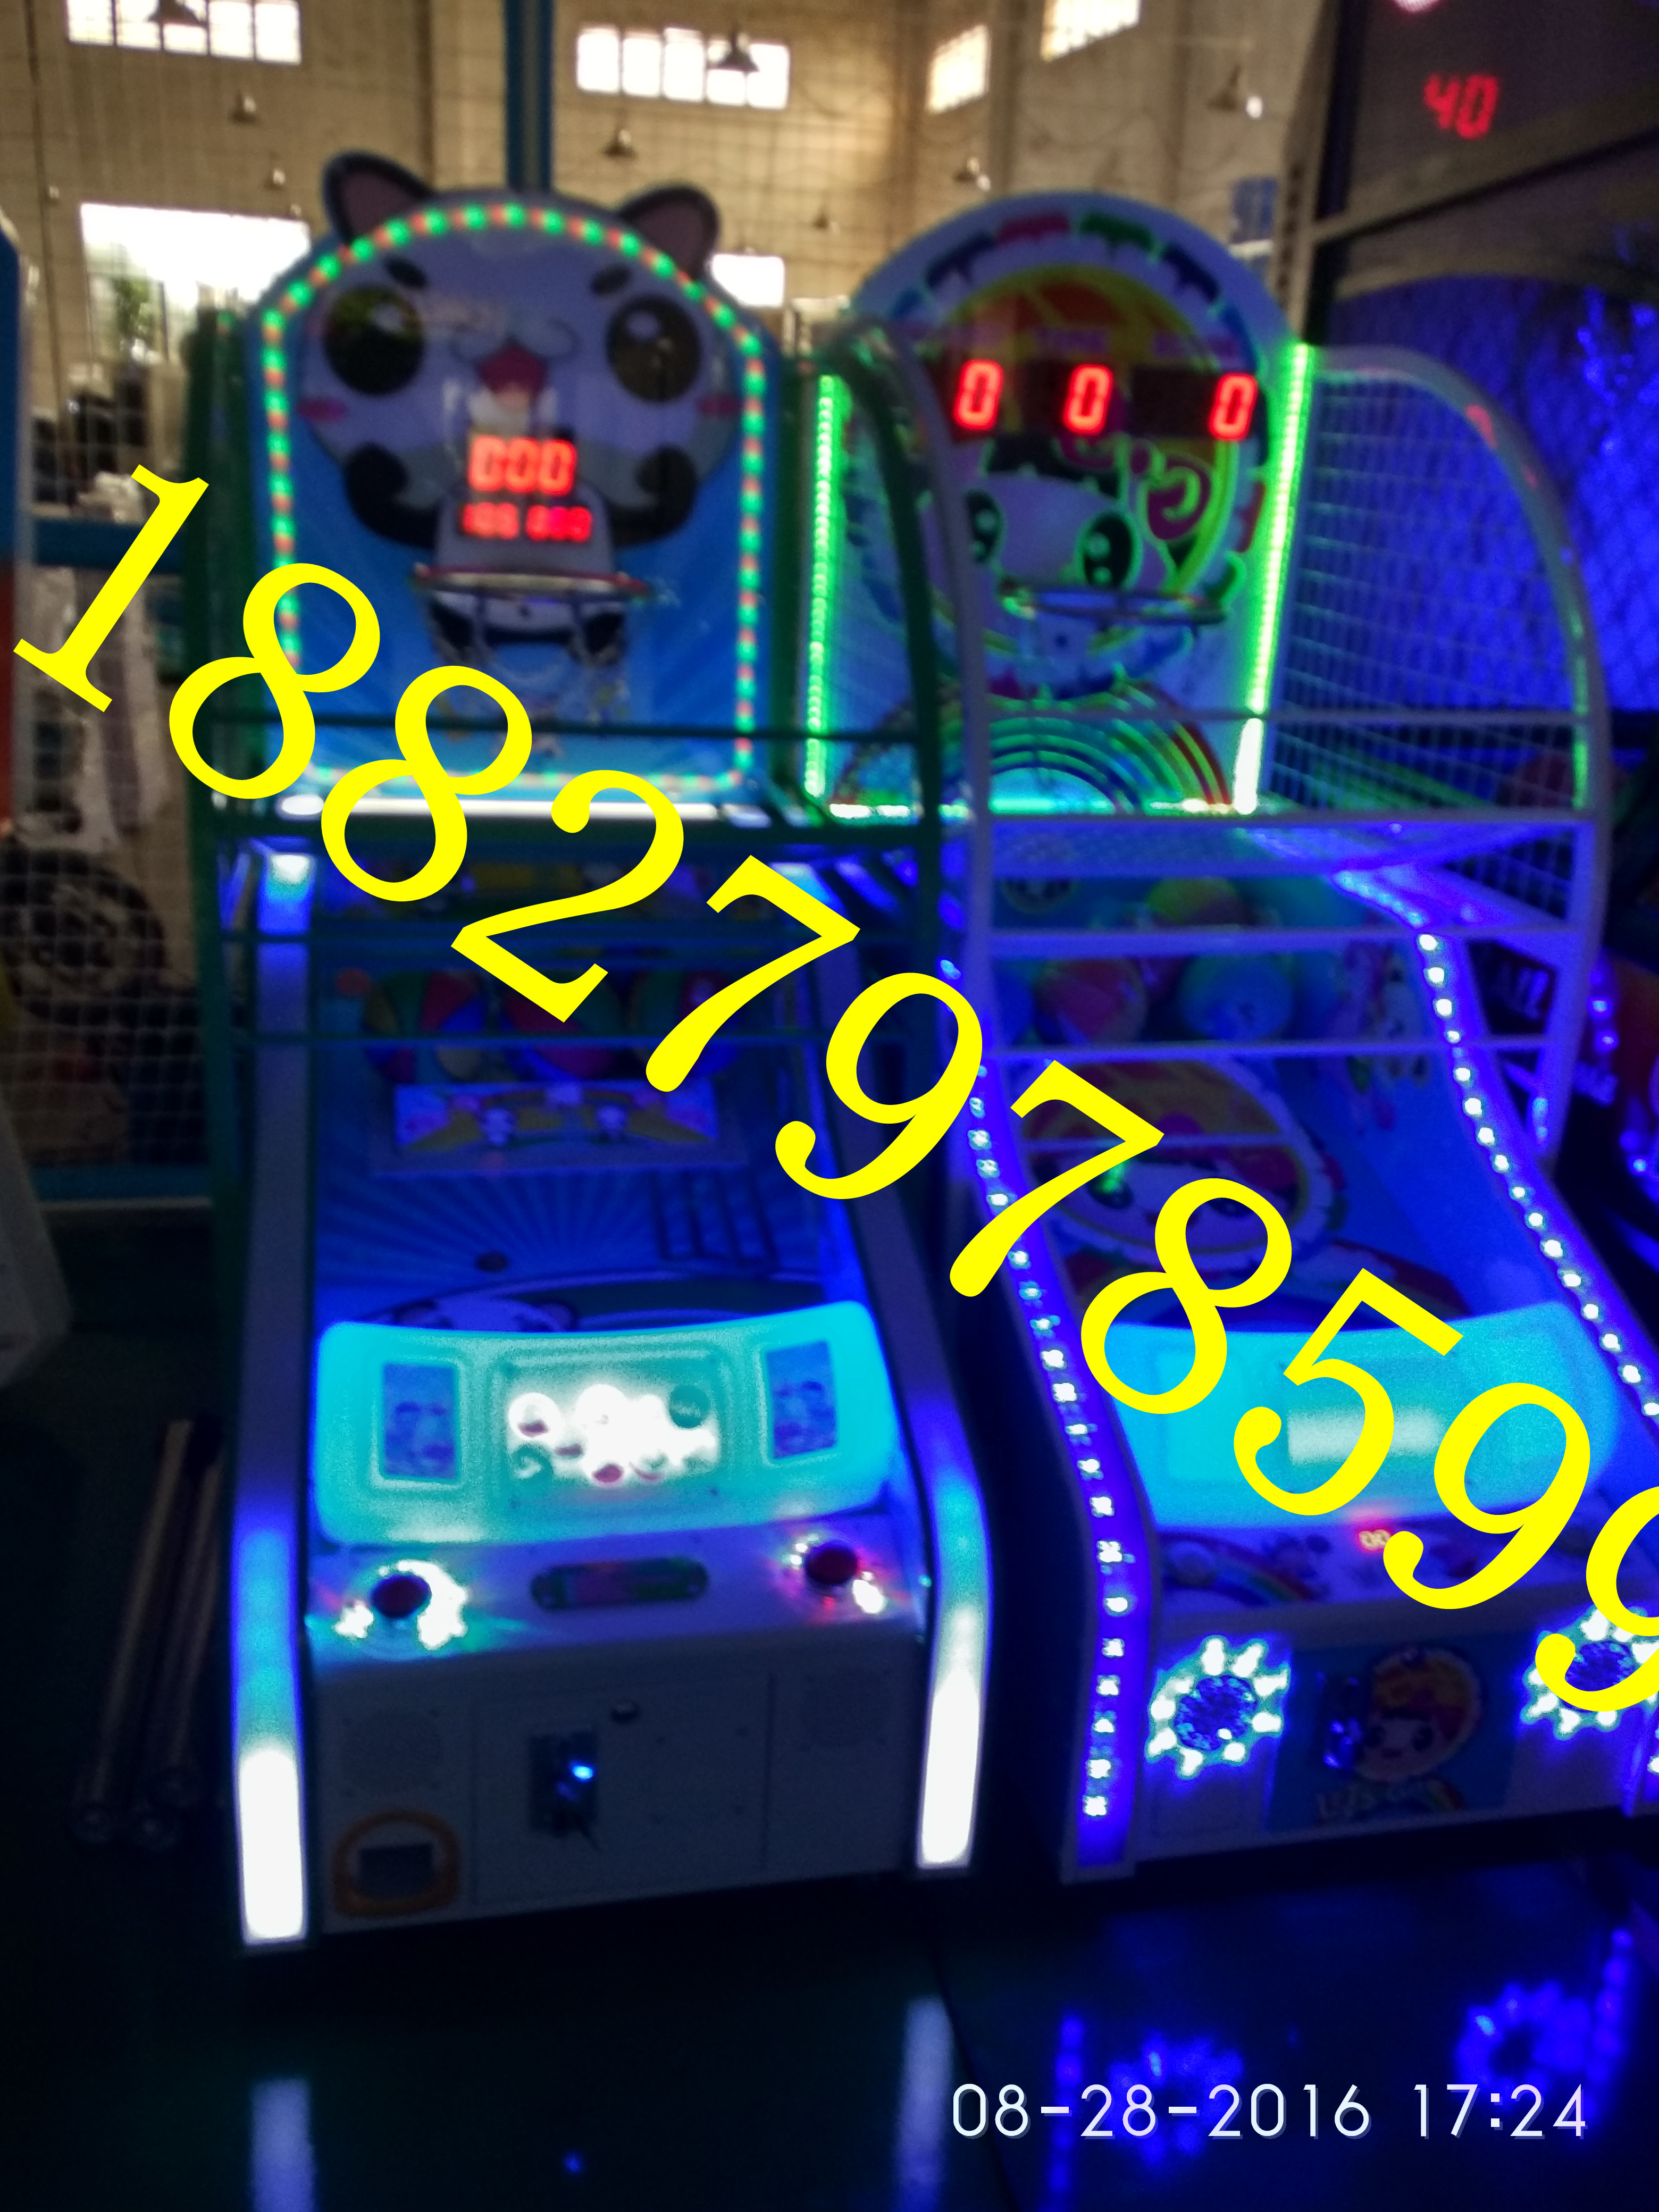 广州市室内儿童乐园电玩设备价格- 室内厂家室内儿童乐园电玩设备价格-  室内儿童乐园电玩设备价格- 室内